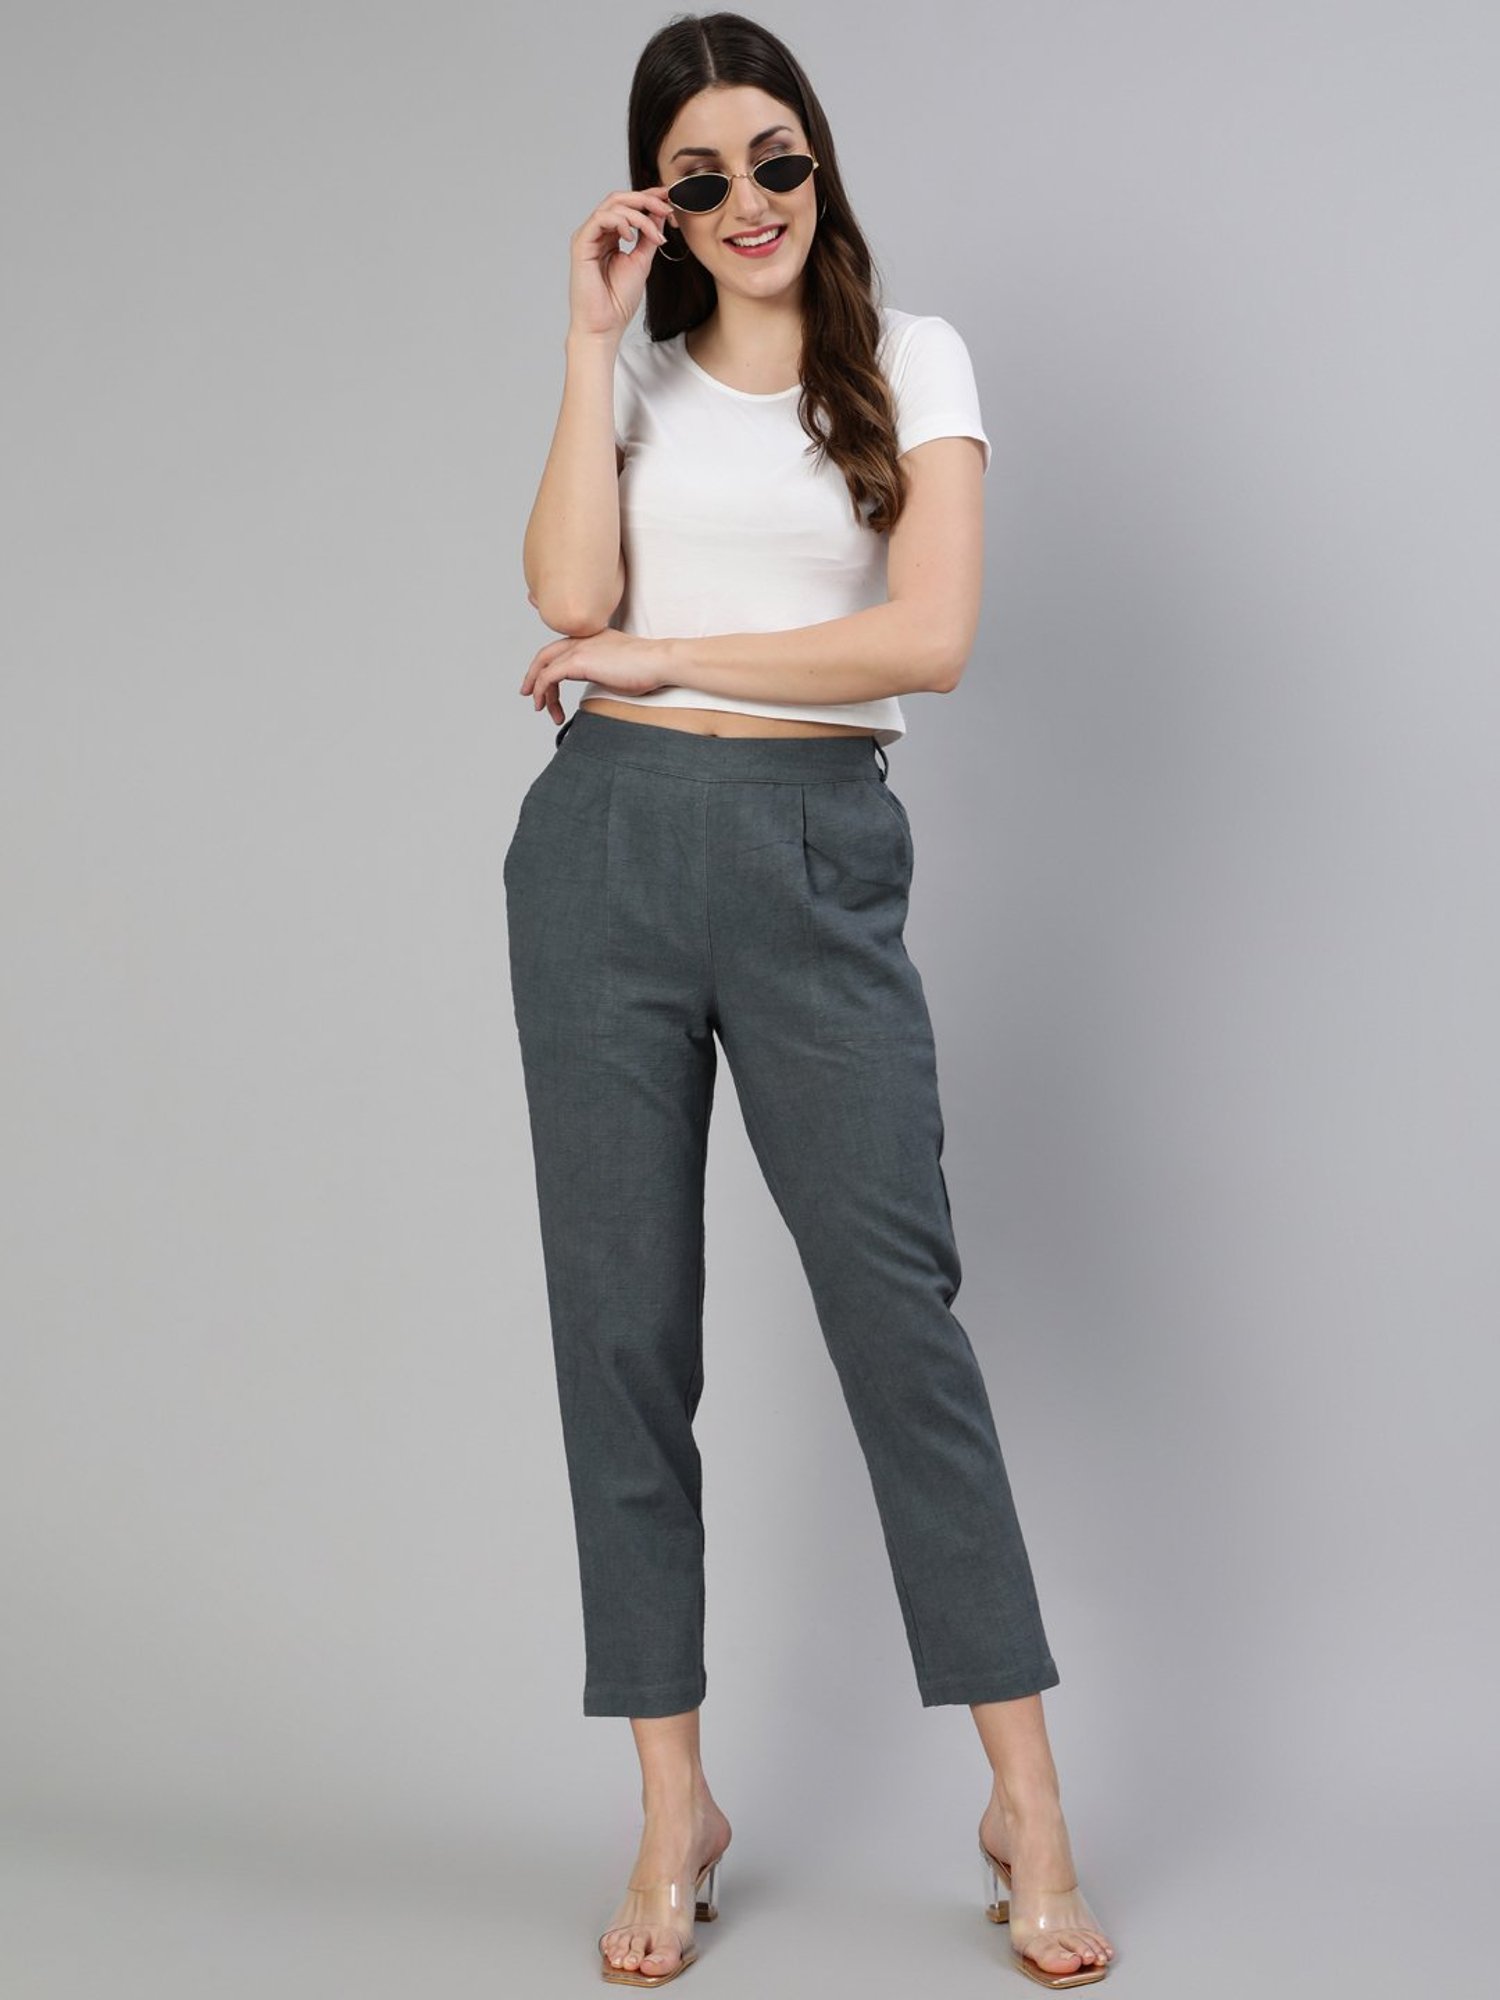 Buy Women Grey Check Formal Regular Fit Trousers Online  792167  Van  Heusen